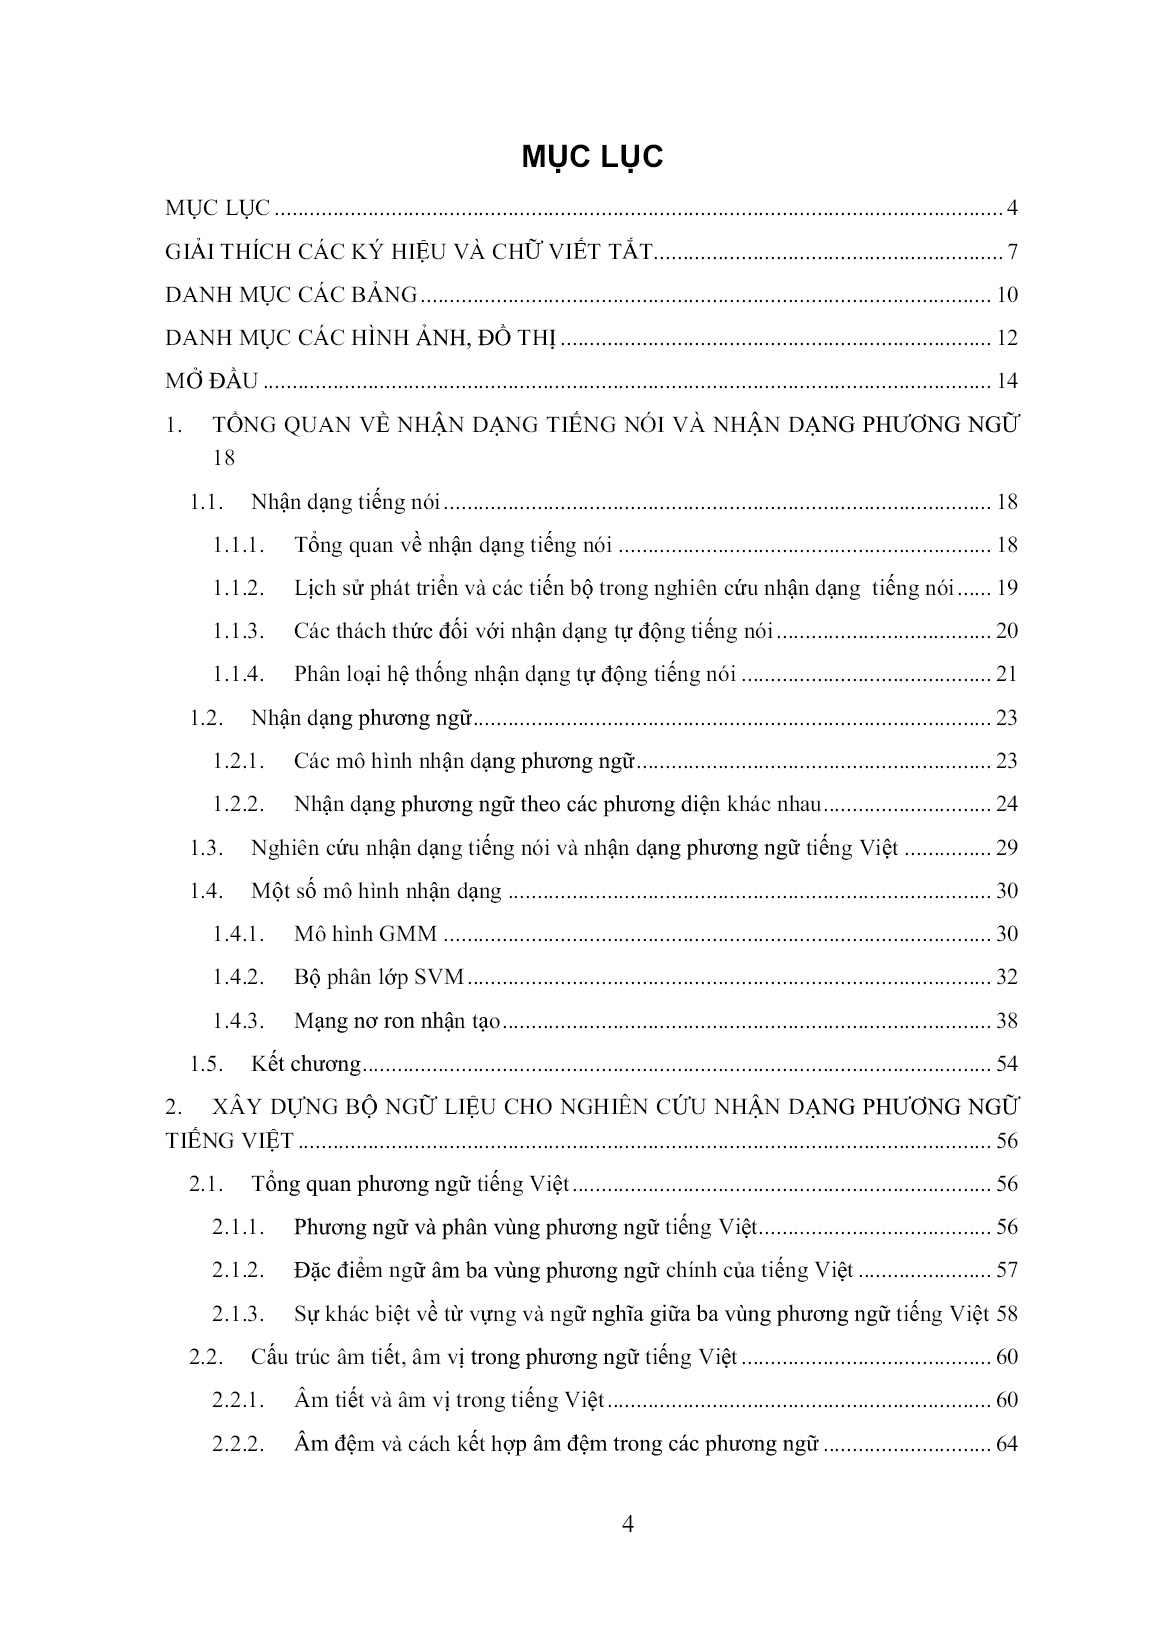 Luận án Nhận dạng tự động tiếng nói phát âm liên tục cho các phương ngữ chính của tiếng Việt theo phương thức phát âm trang 4